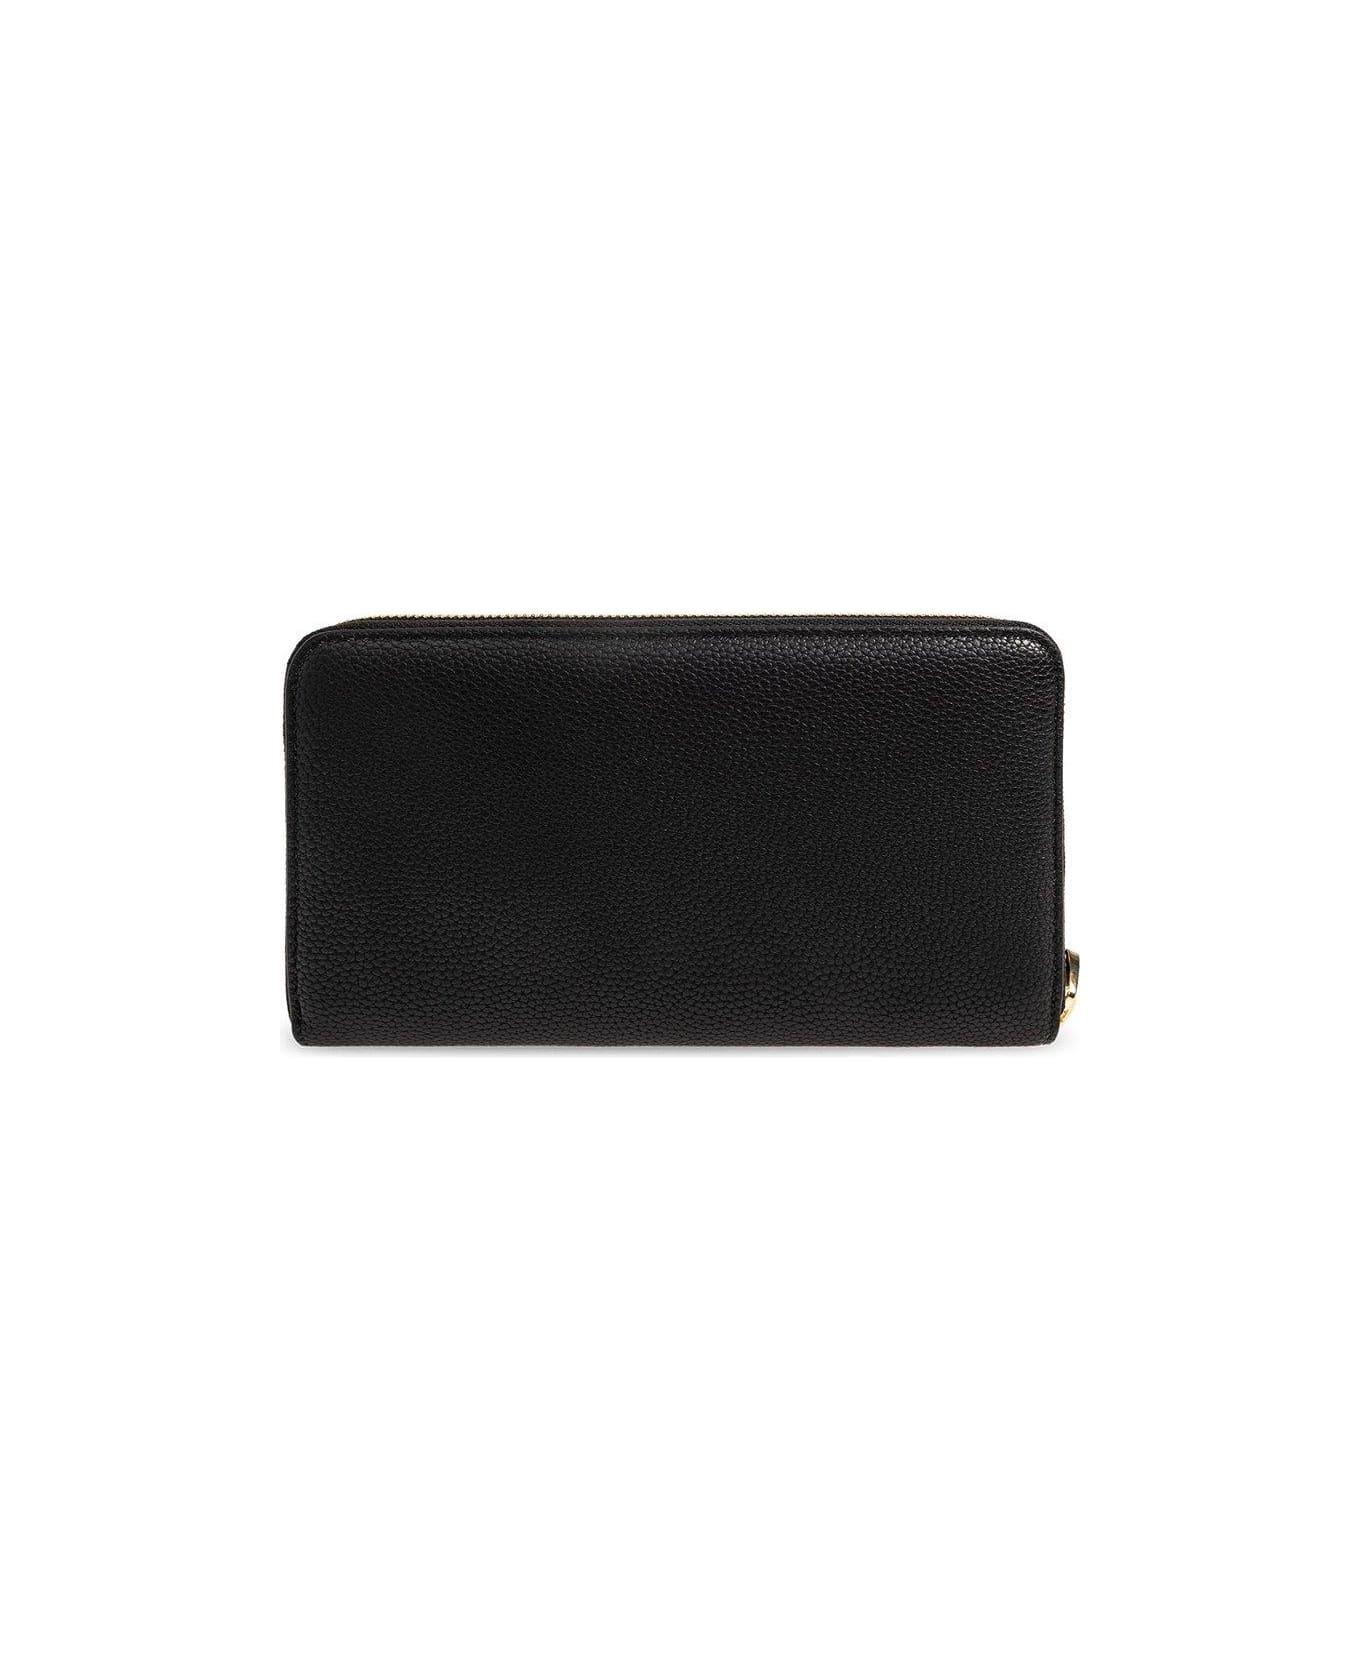 Emporio Armani Wallet With Logo - Black 財布